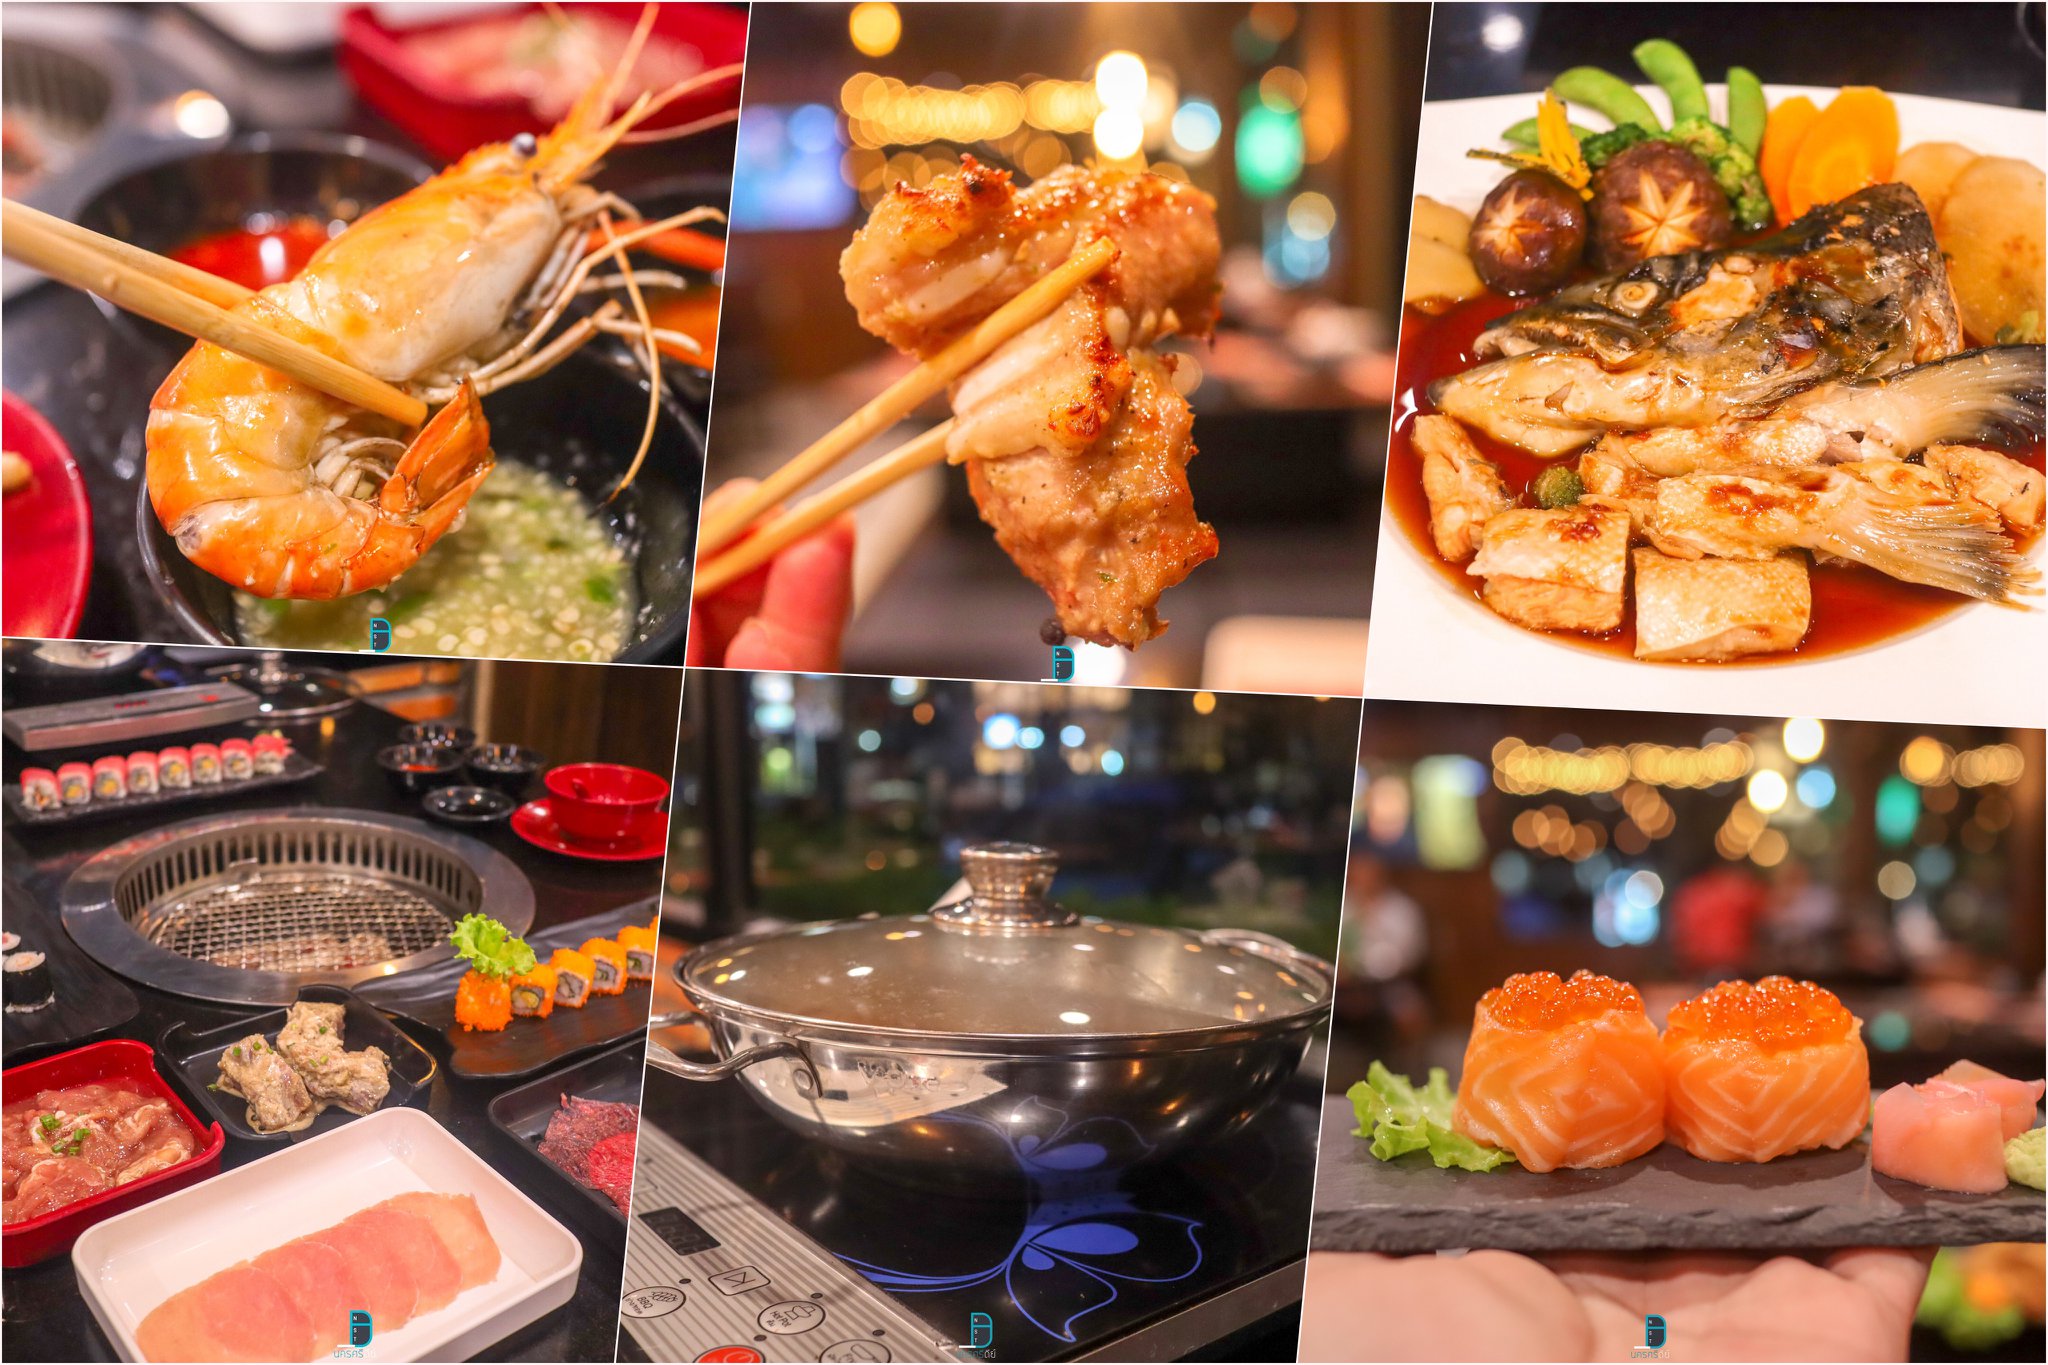  28.-Namba-Sahbu---Grill-และอาหารญี่ปุ่น
รายละเอียด-คลิก แหล่งท่องเที่ยว,นครศรี,จุดเช็คอิน,จุดถ่ายรูป,คาเฟ่,ของกิน,จุดกิน